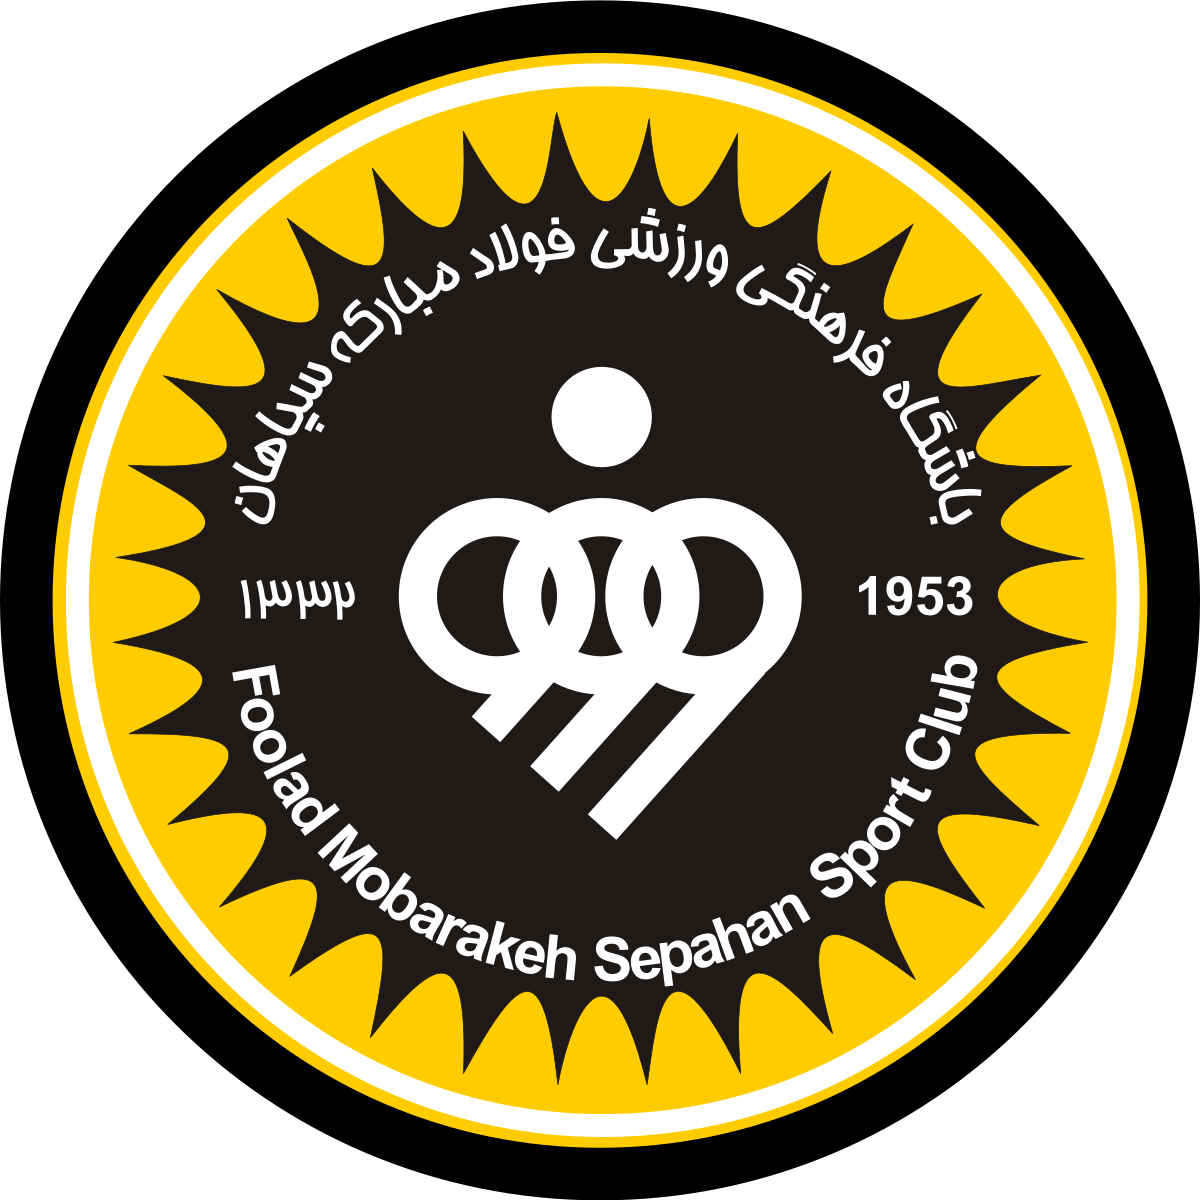 塞帕罕logo